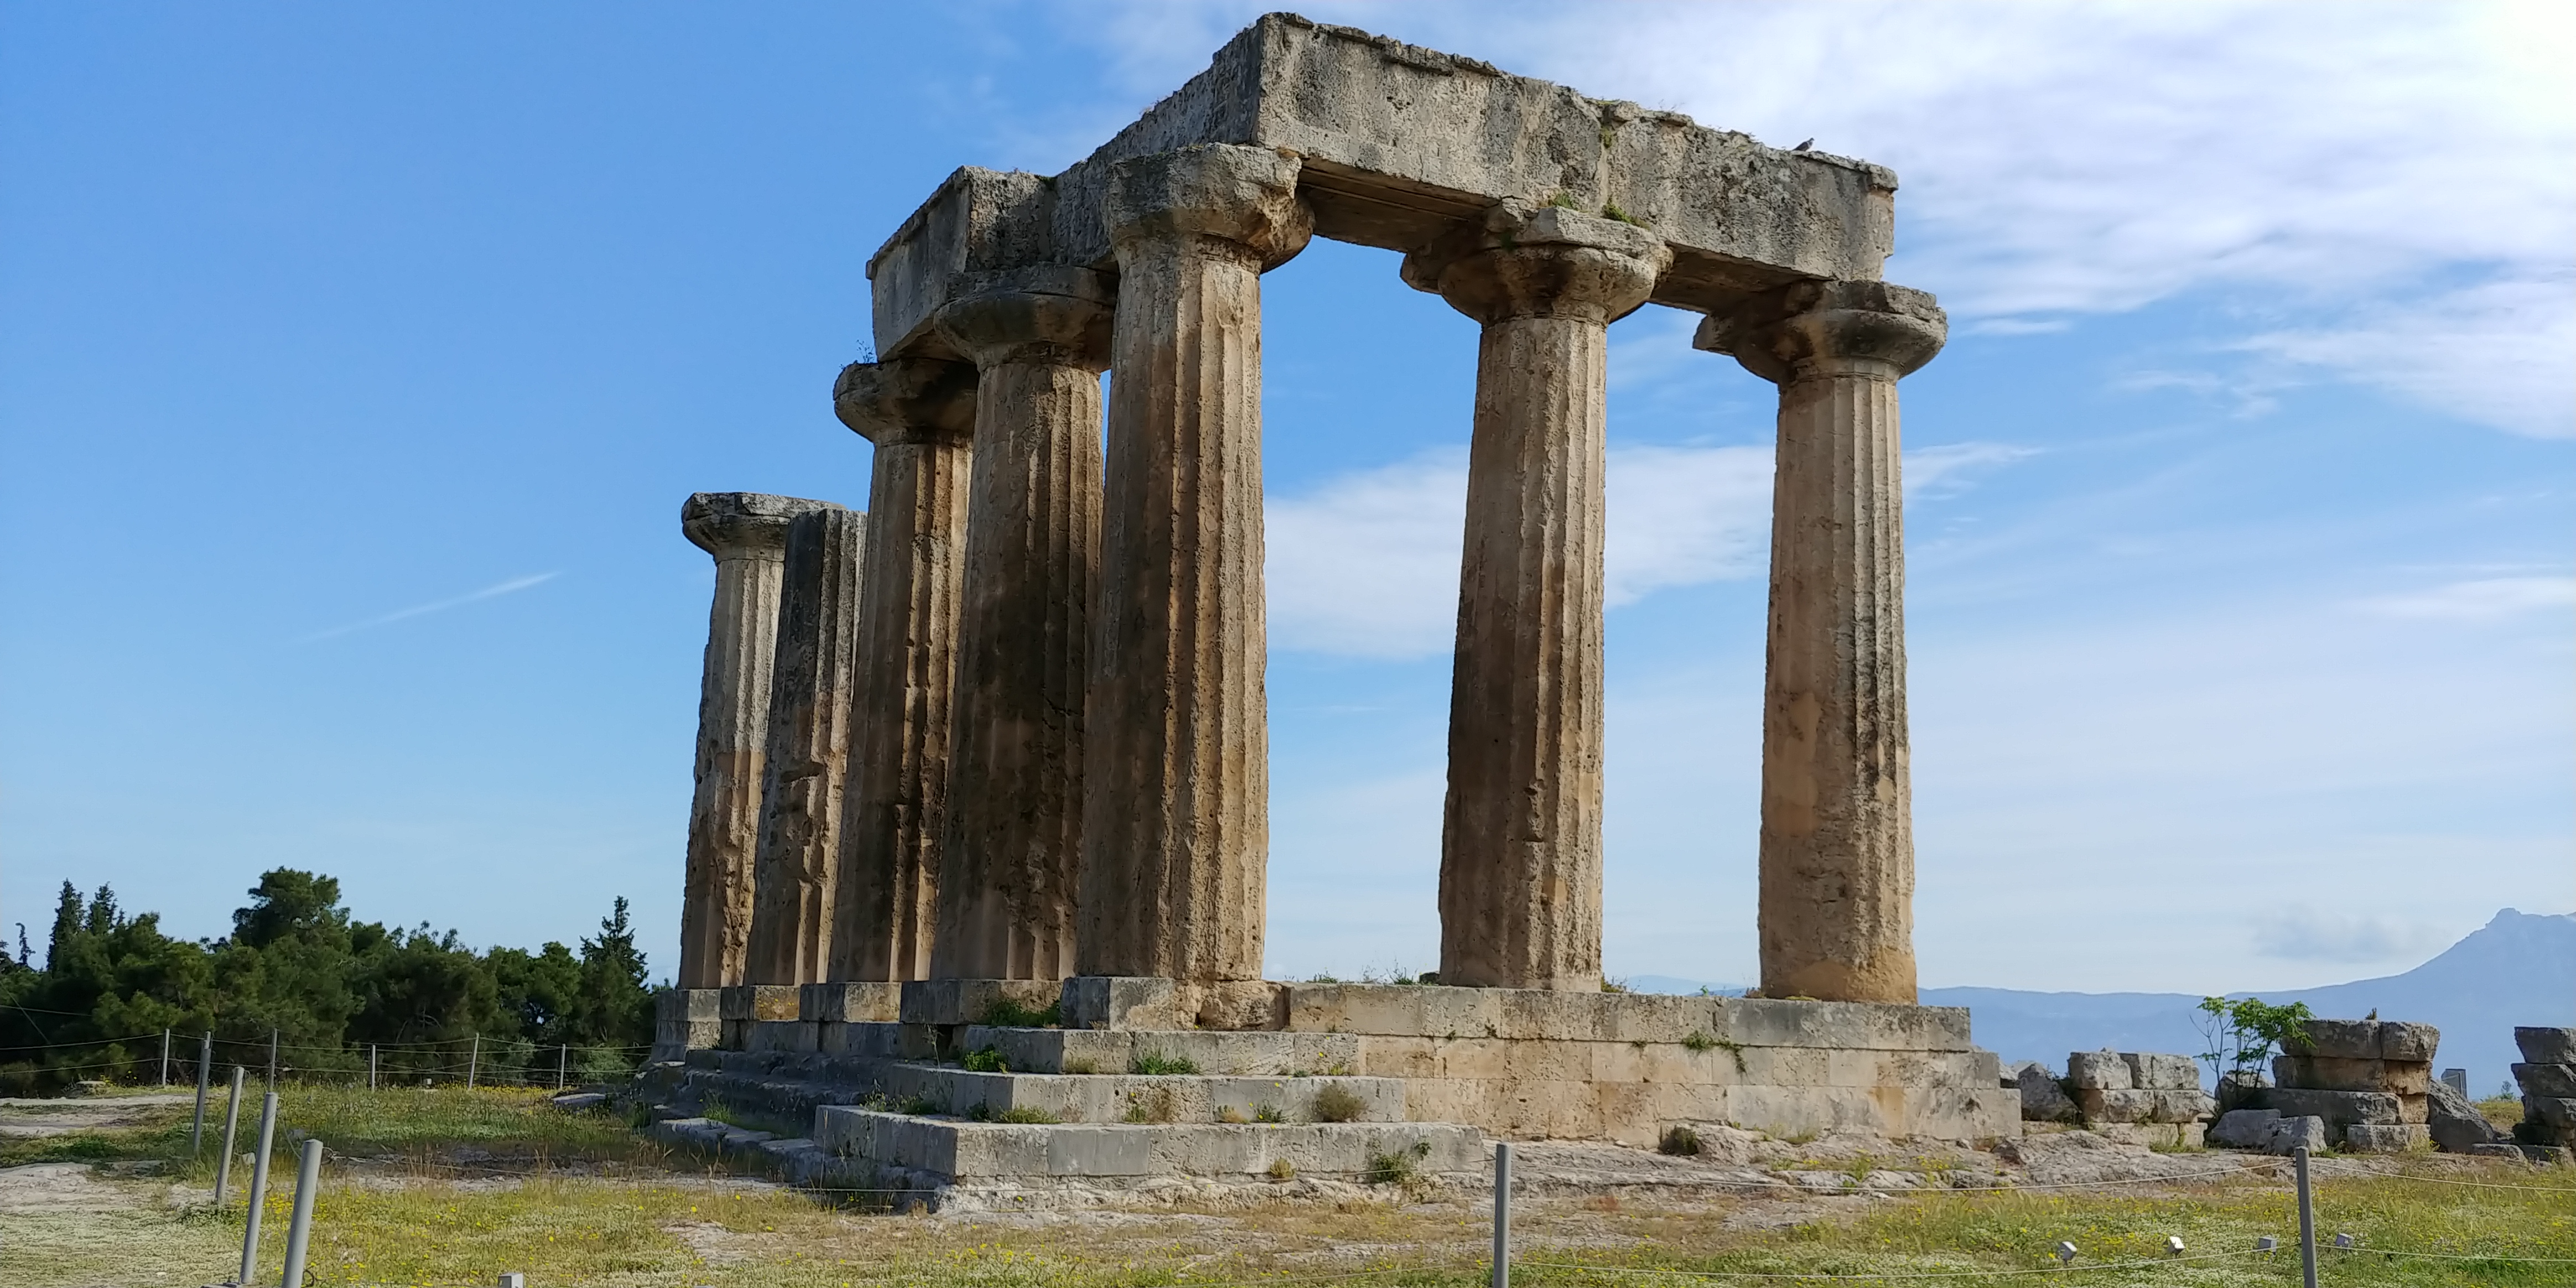 Apollo temple In Corinth, Greece